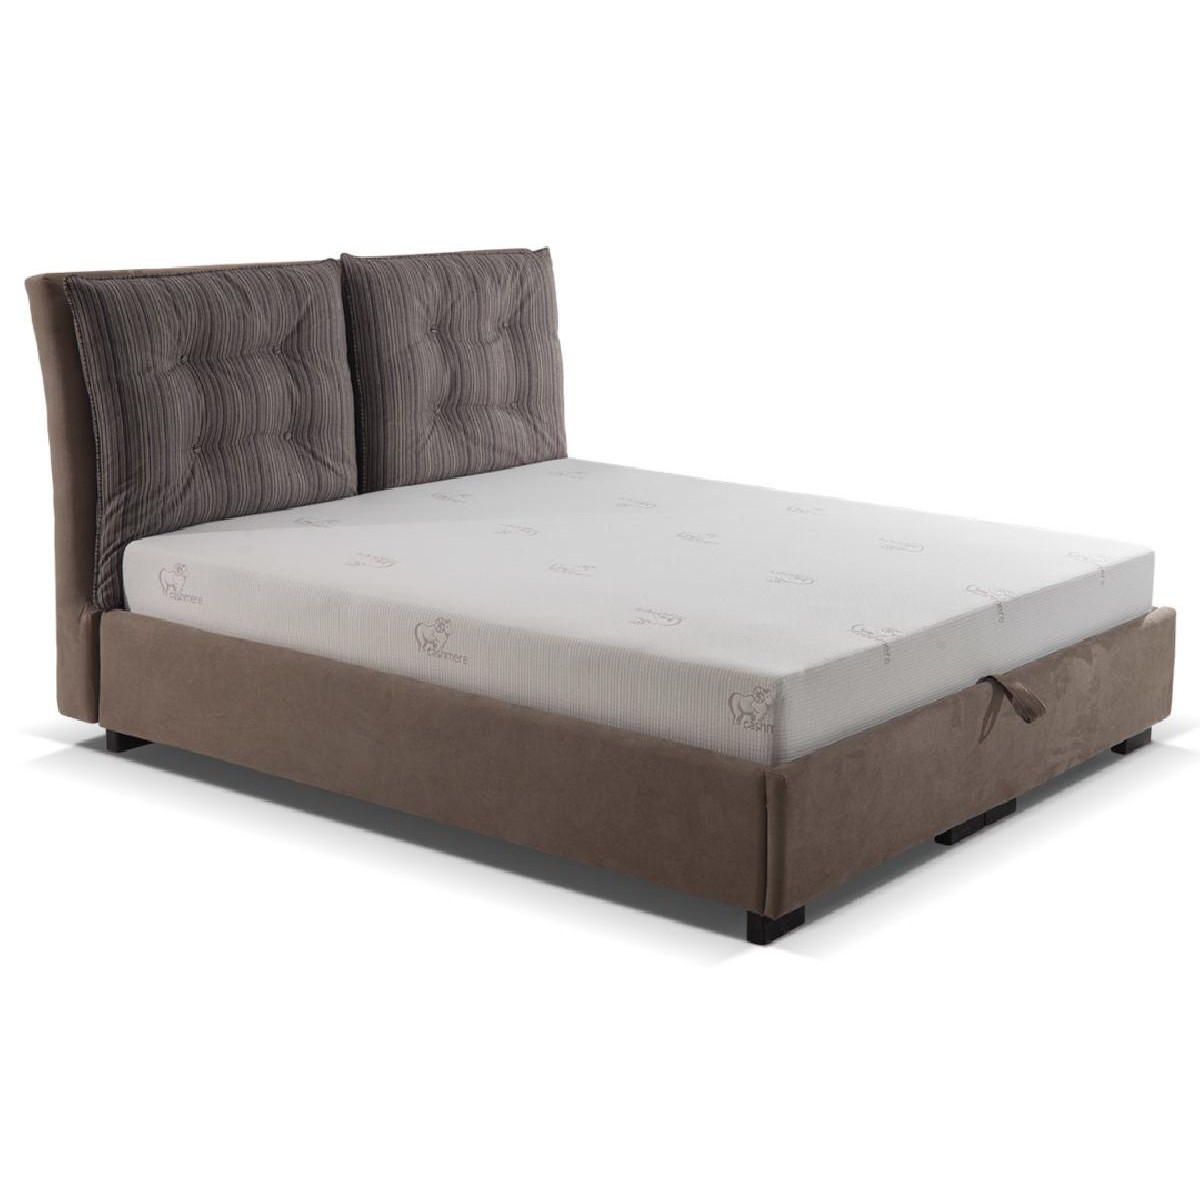 Κρεβάτι με αποθηκευτικό χώρο και ενσωματωμένο στρώμα VM-Arizona 140